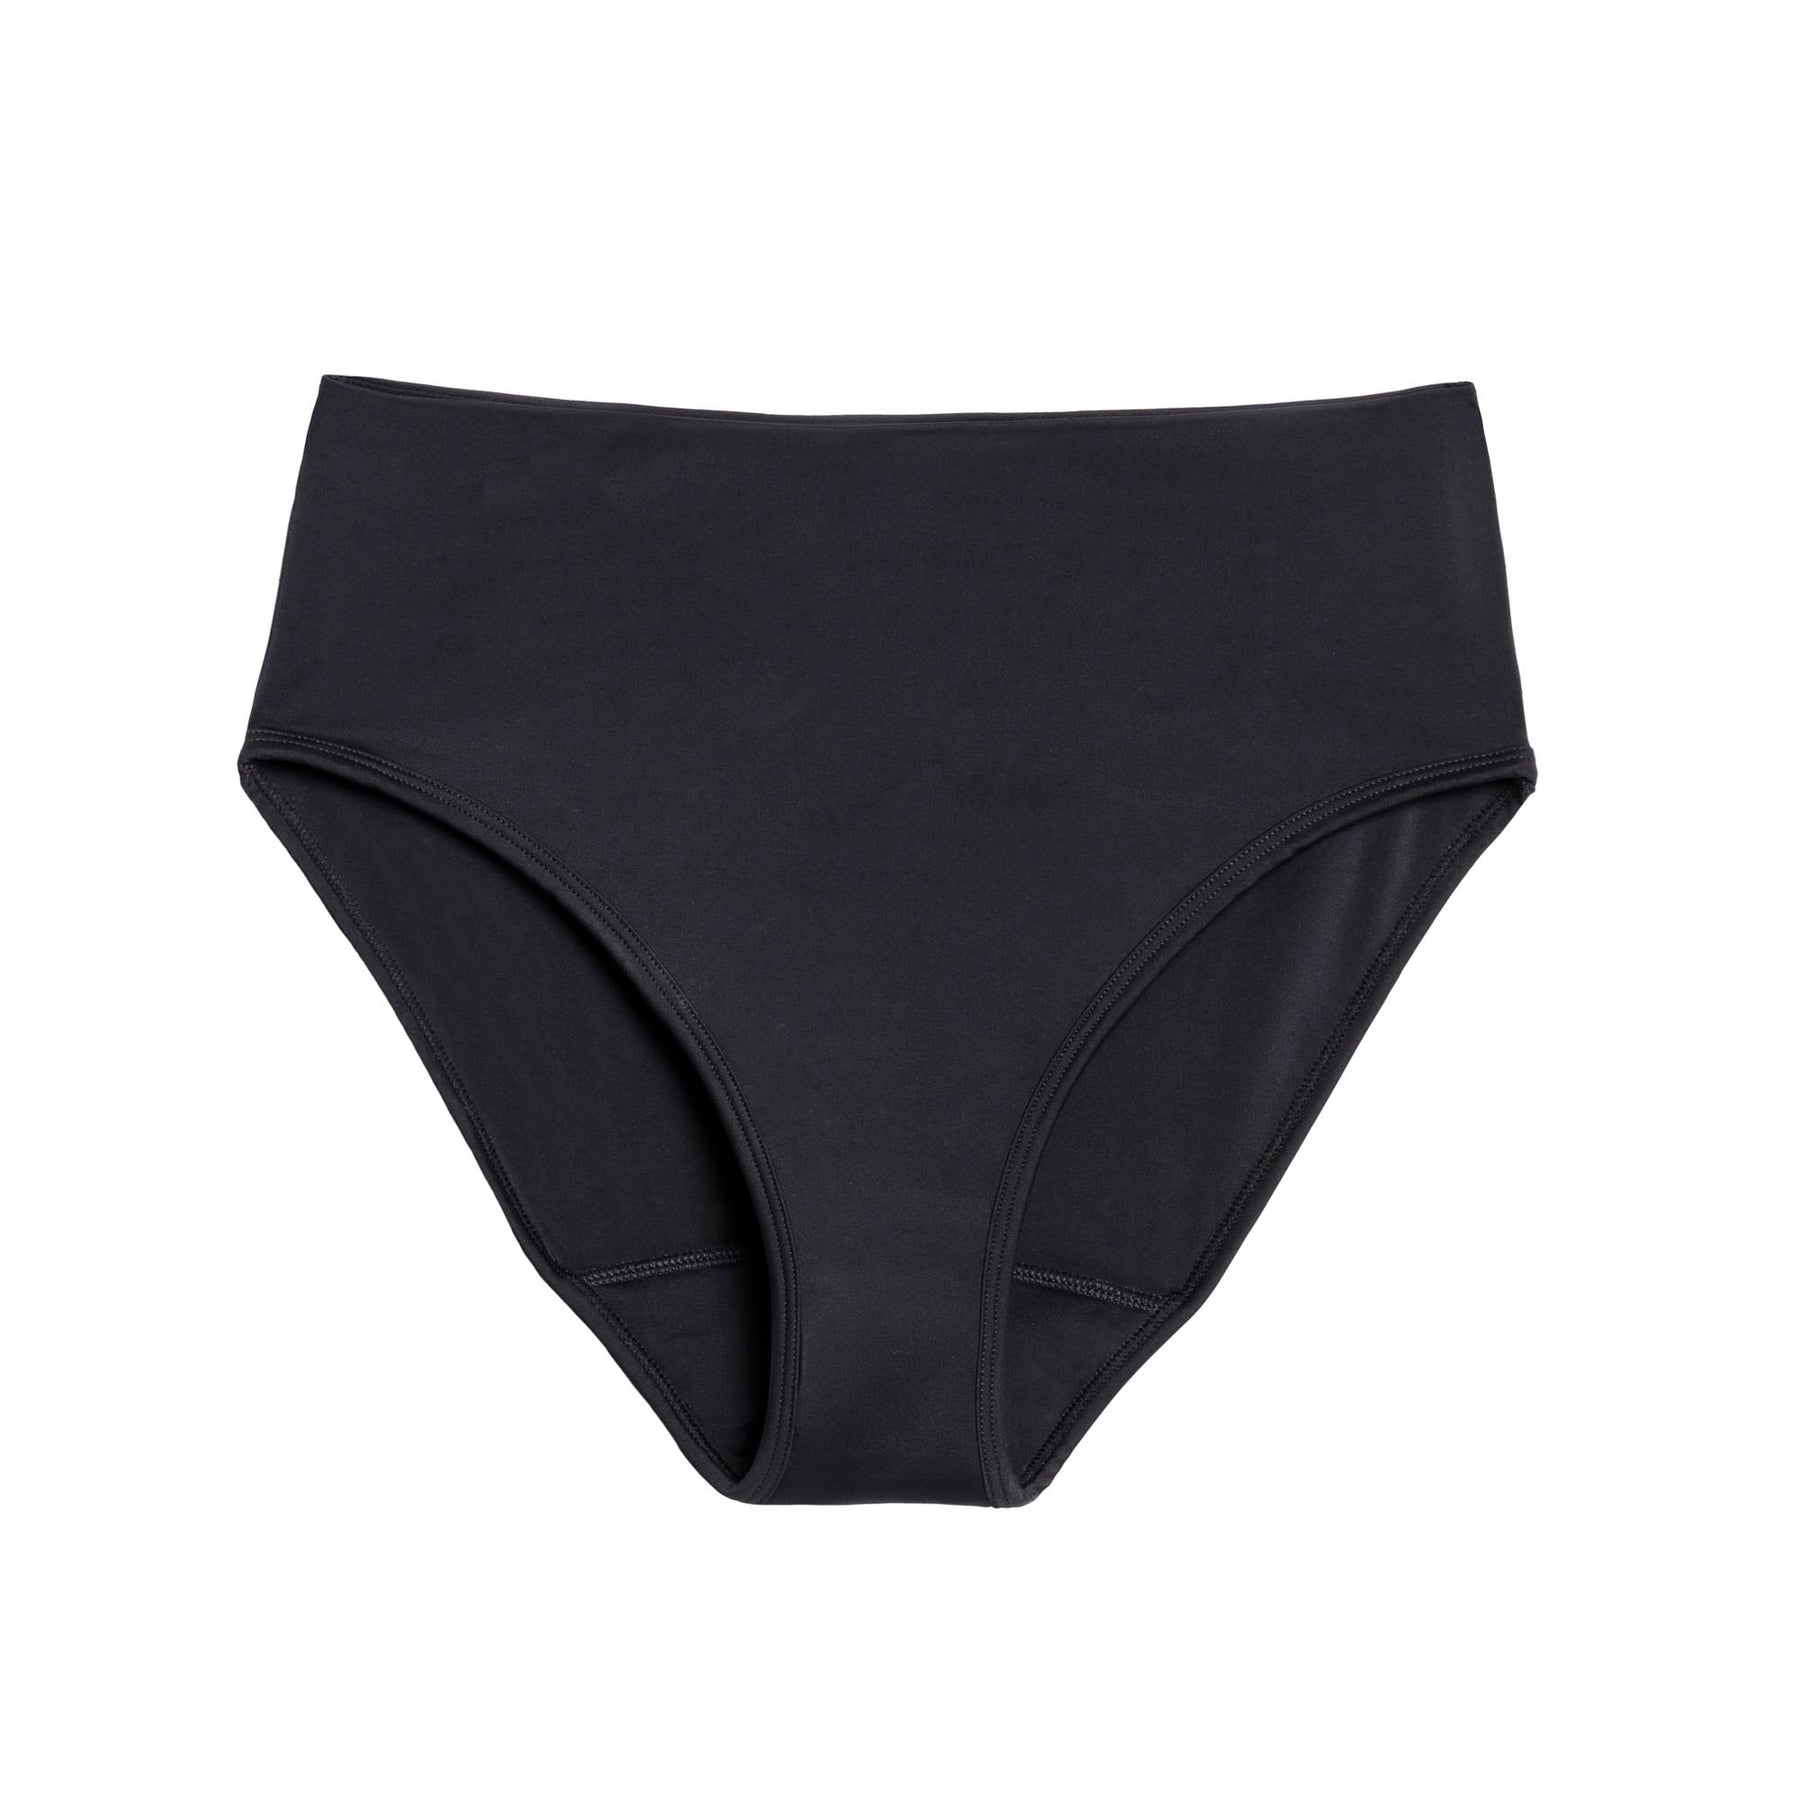 Period Swim Underwear